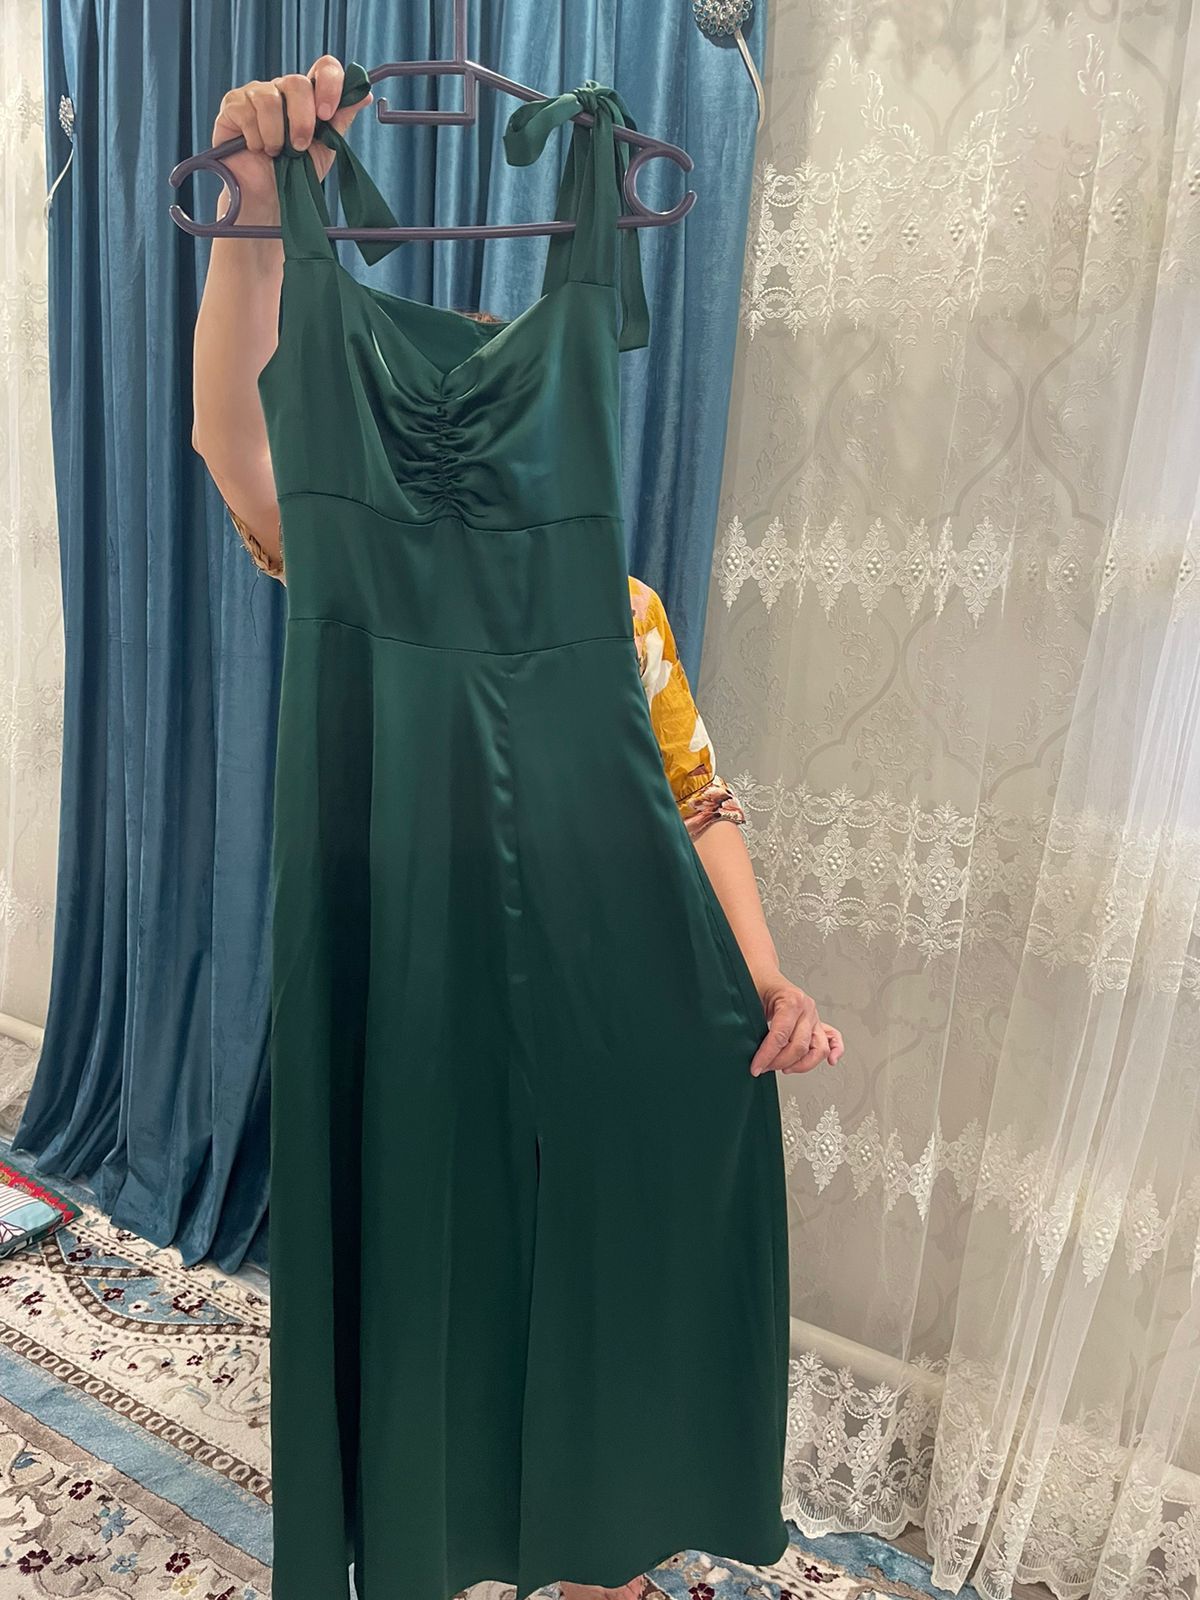 Продается длинное платье на выпускной,зеленого цвета,на подкладе,спере